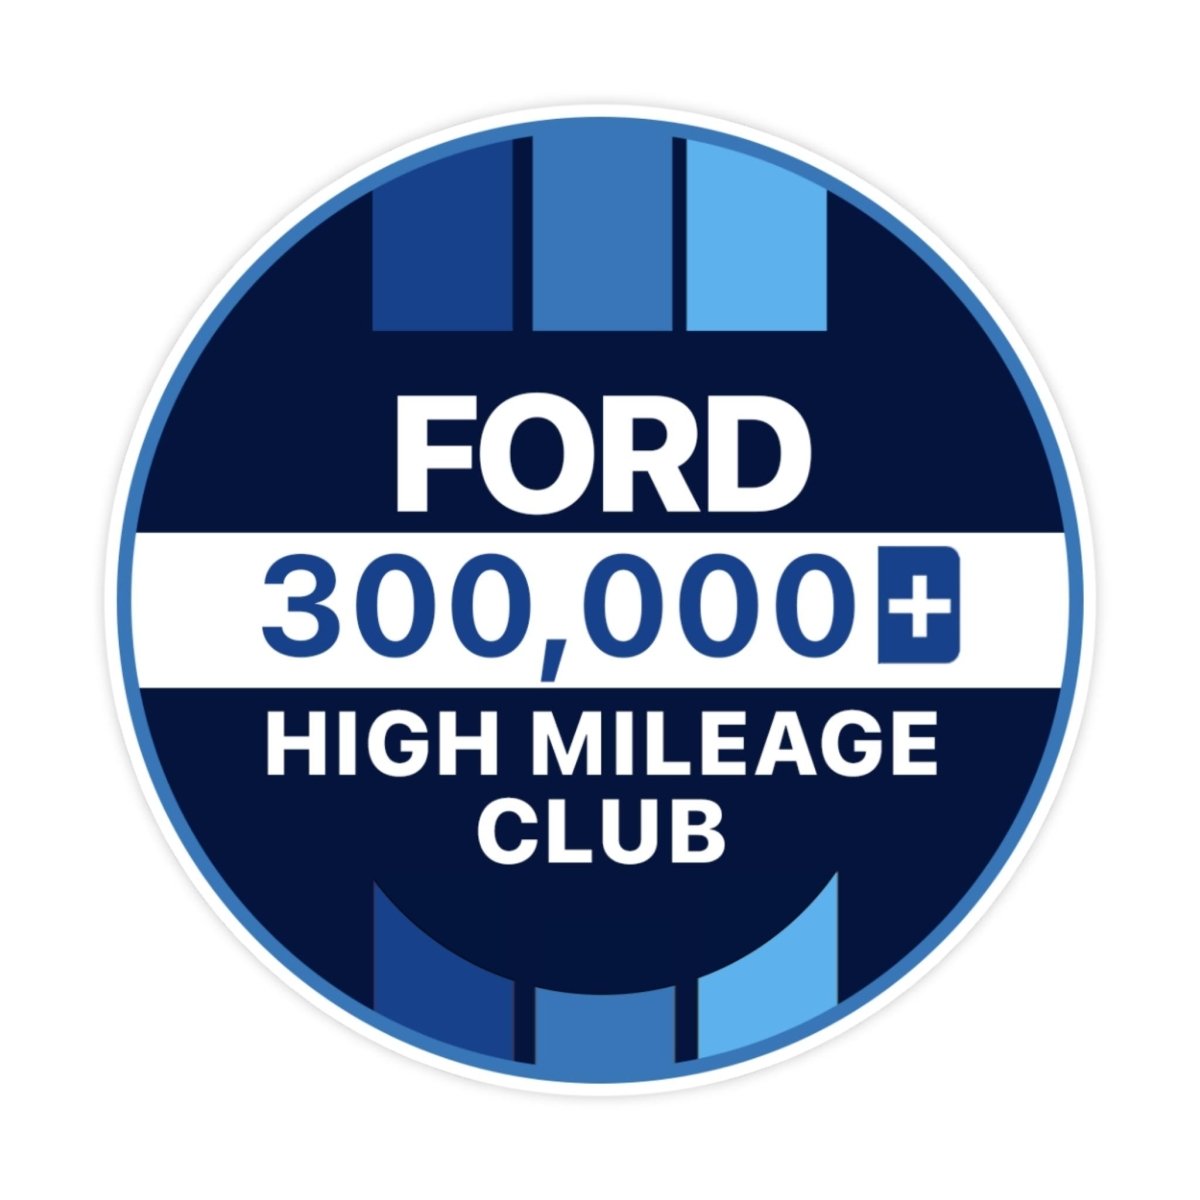 Ford 500k High Mileage Club Sticker - stickerbullFord 500k High Mileage Club StickerRetail StickerstickerbullstickerbullTaylor_Ford300k [#120]300kFord 500k High Mileage Club Sticker